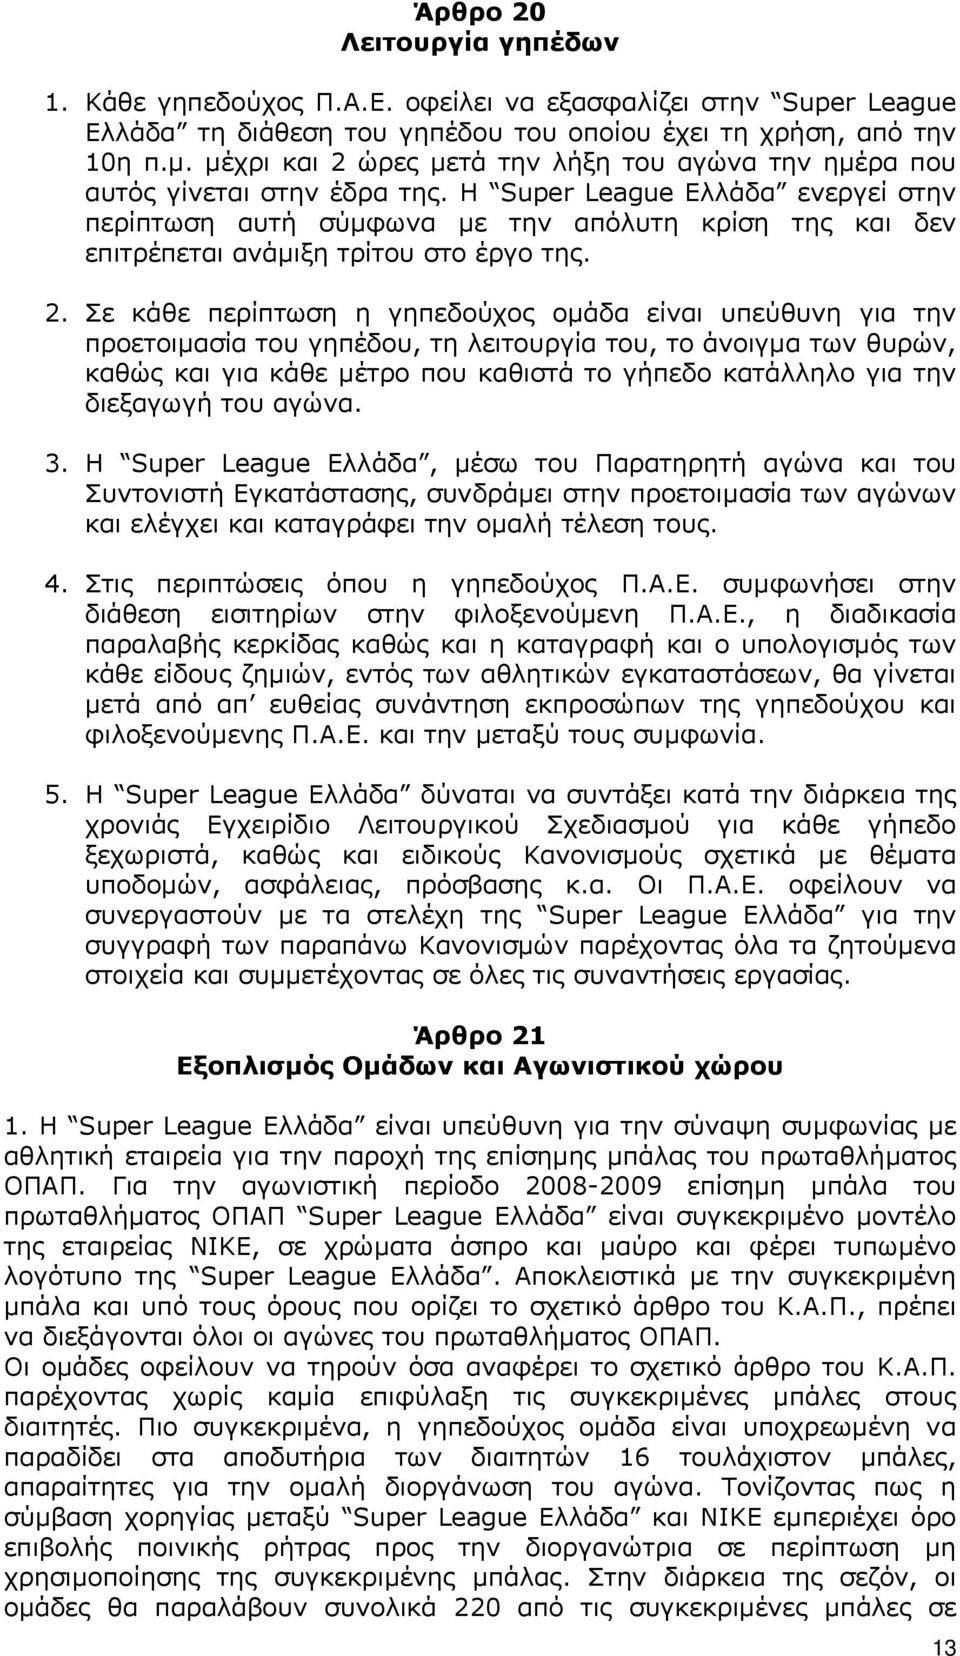 Η Super League Ελλάδα ενεργεί στην περίπτωση αυτή σύµφωνα µε την απόλυτη κρίση της και δεν επιτρέπεται ανάµιξη τρίτου στο έργο της. 2.